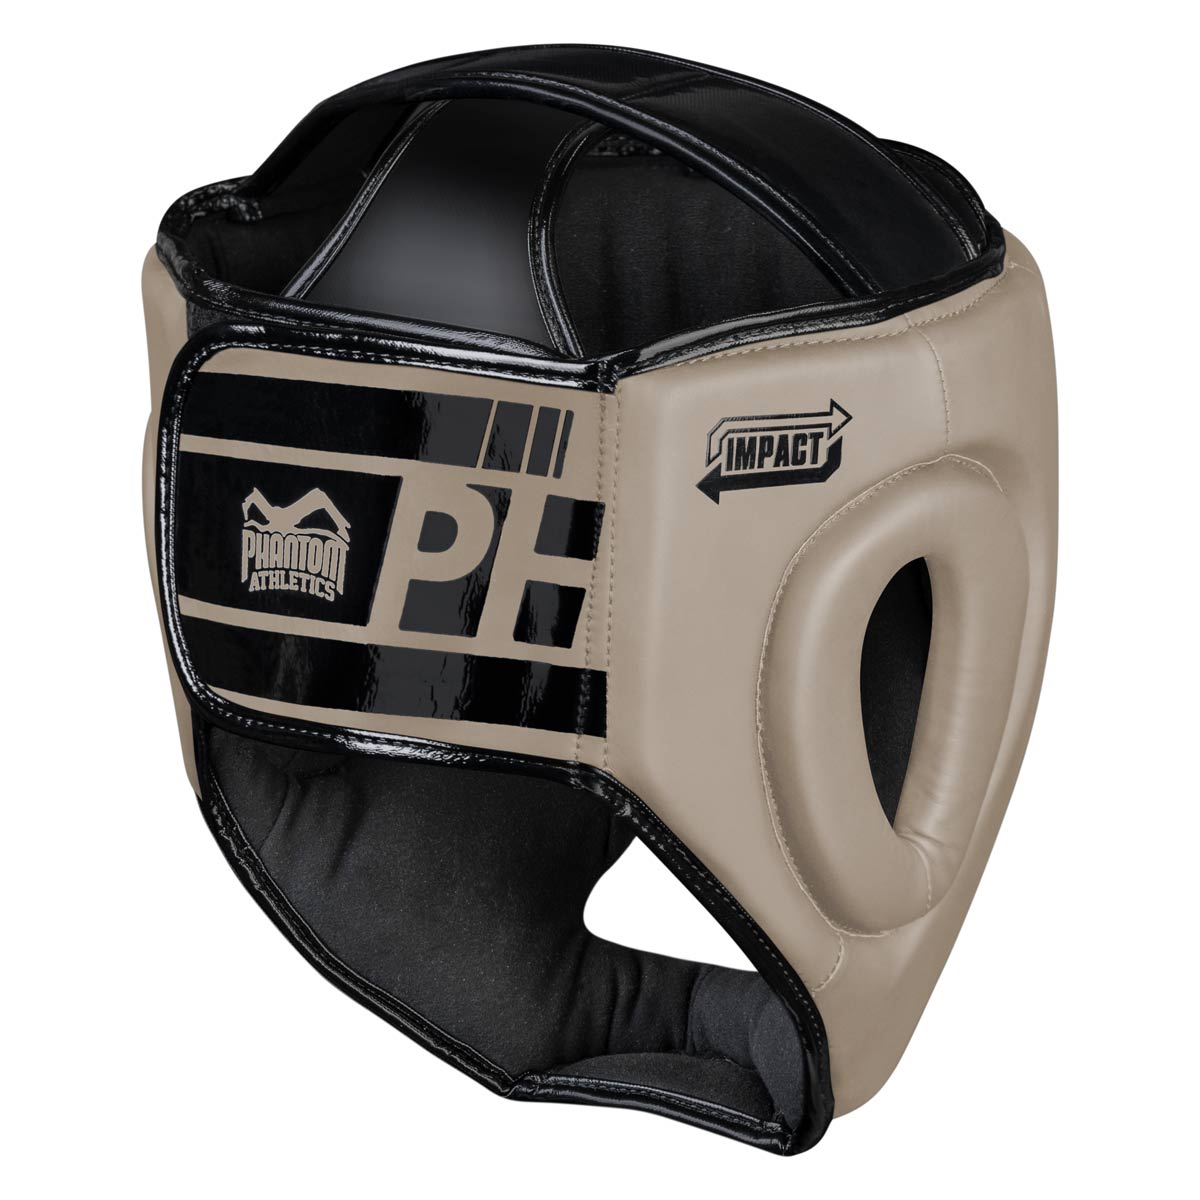 Der Phantom APEX Full Face Kopfschutz in der Farbe Sand verfügt über einen breiten Klettverschluss an der Rückseite für besten Halt im Training